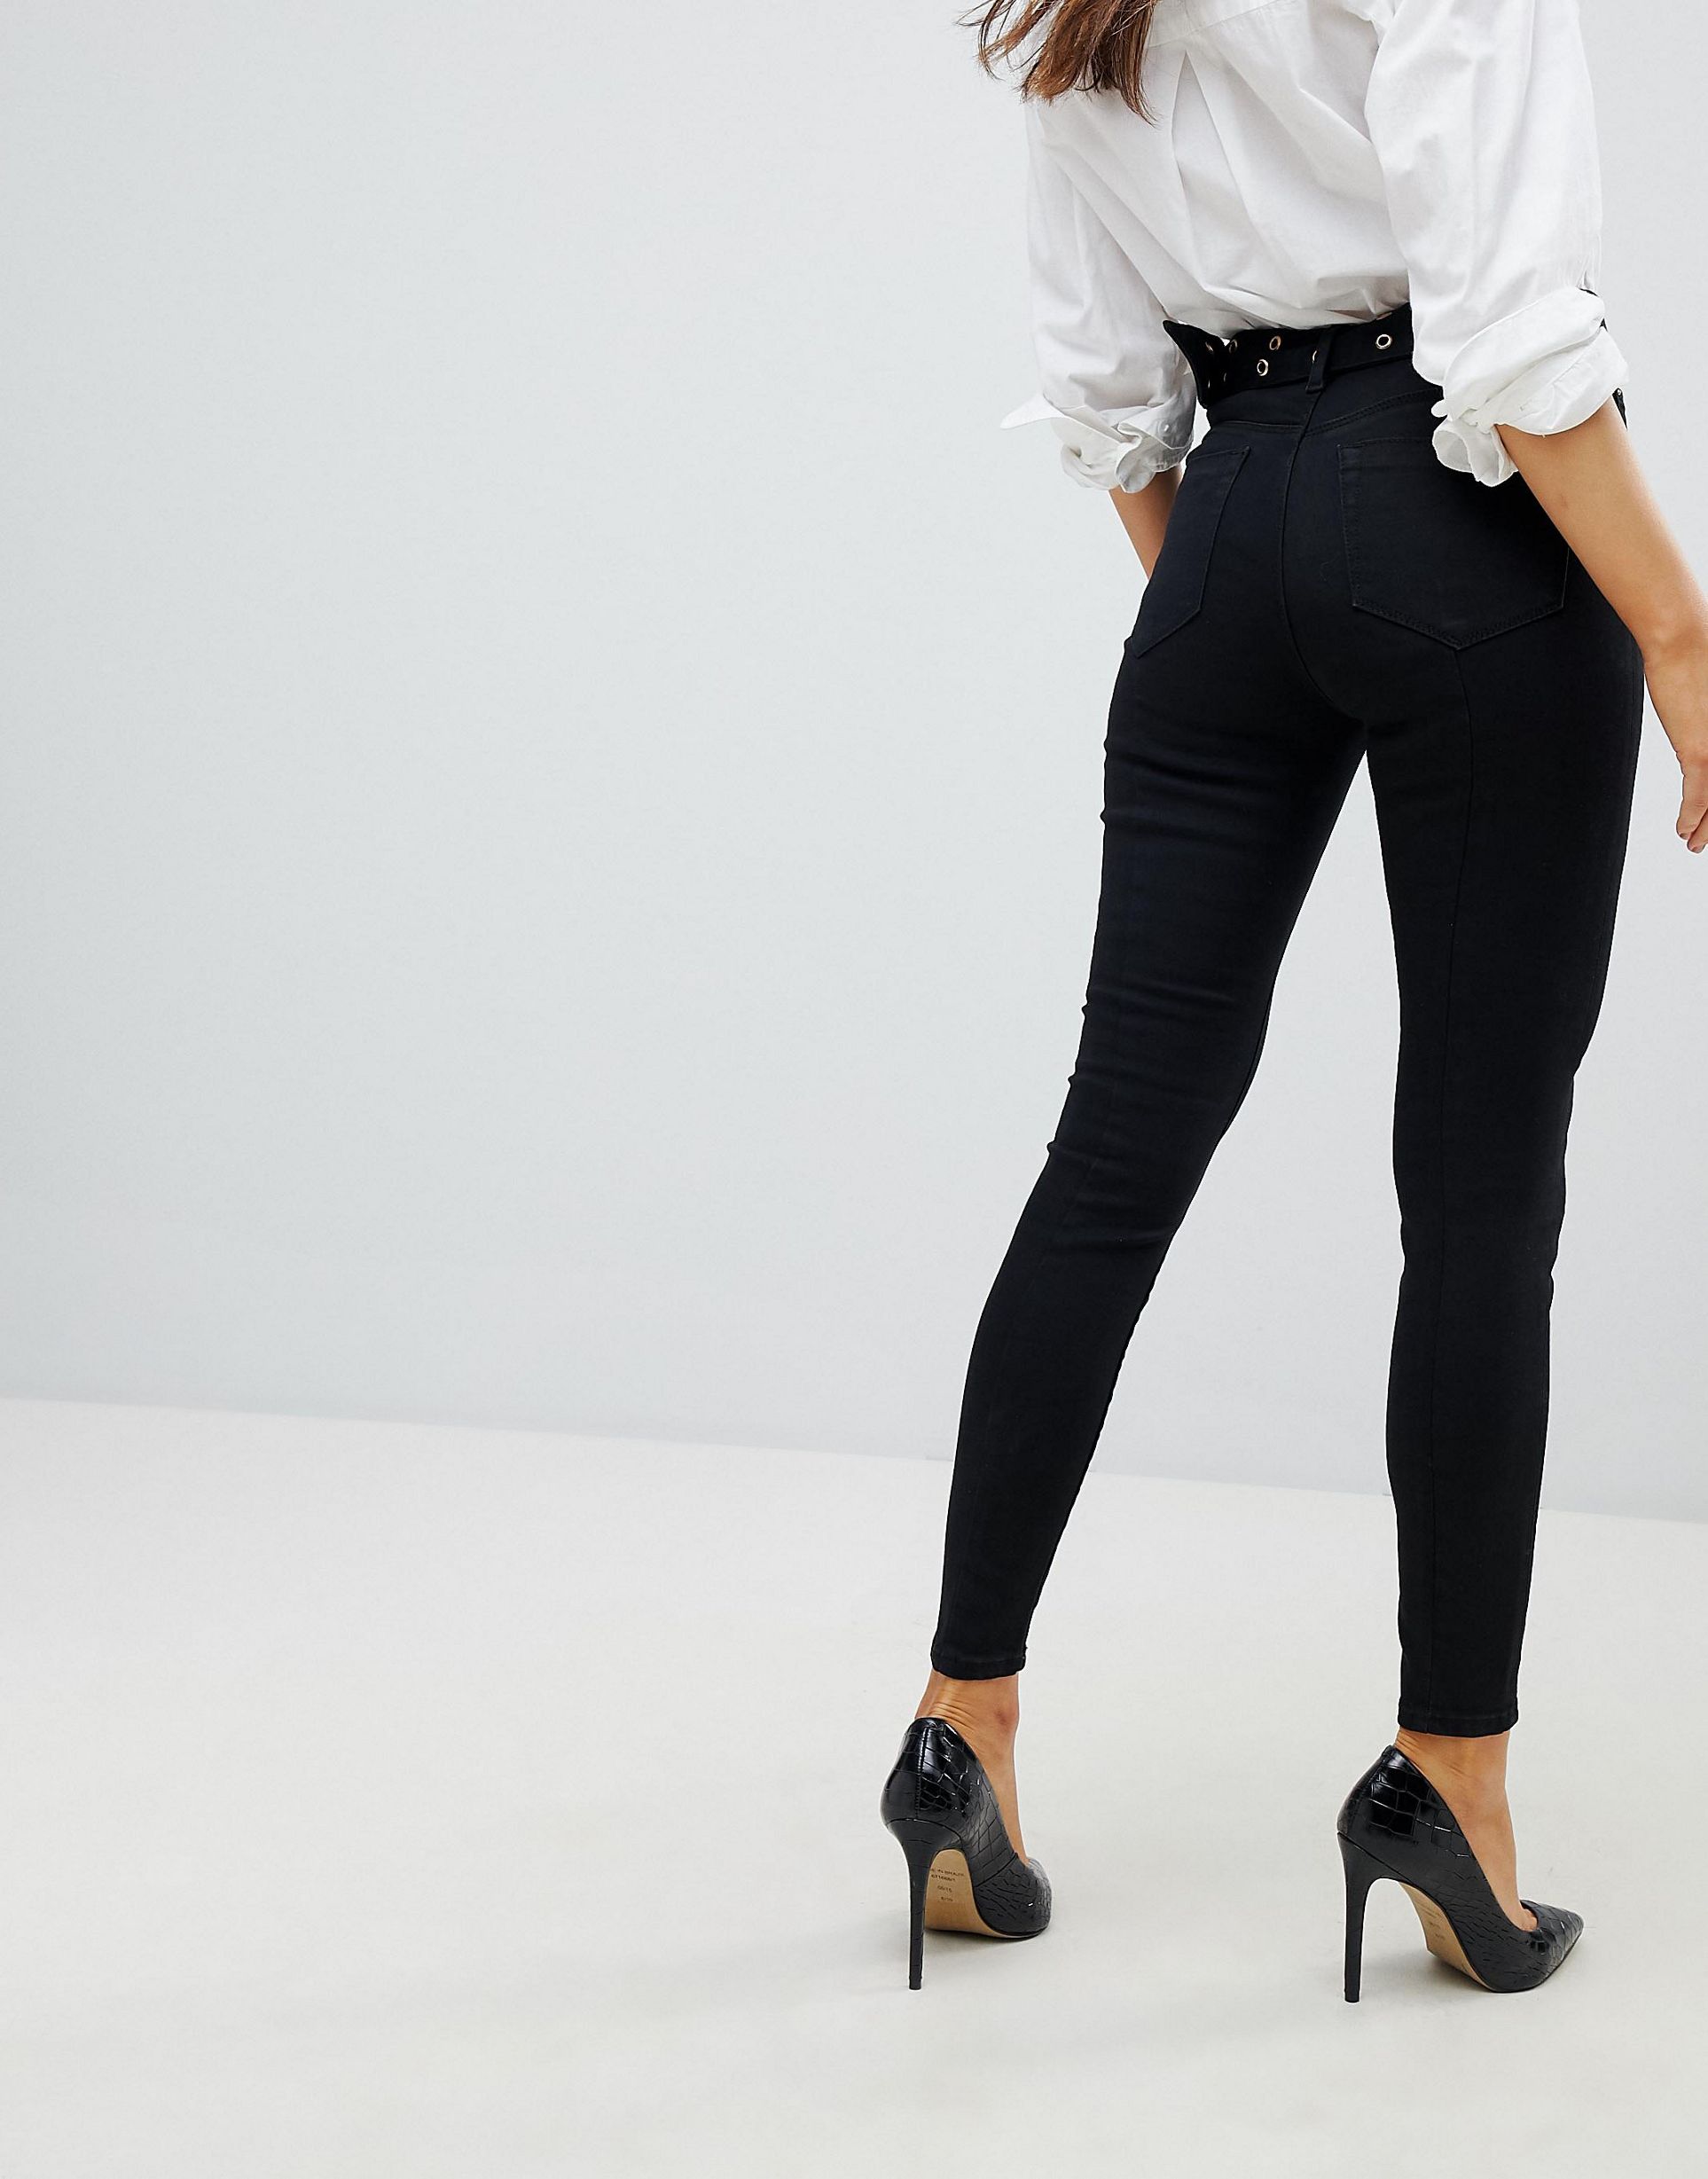 Женщины в черных джинсах